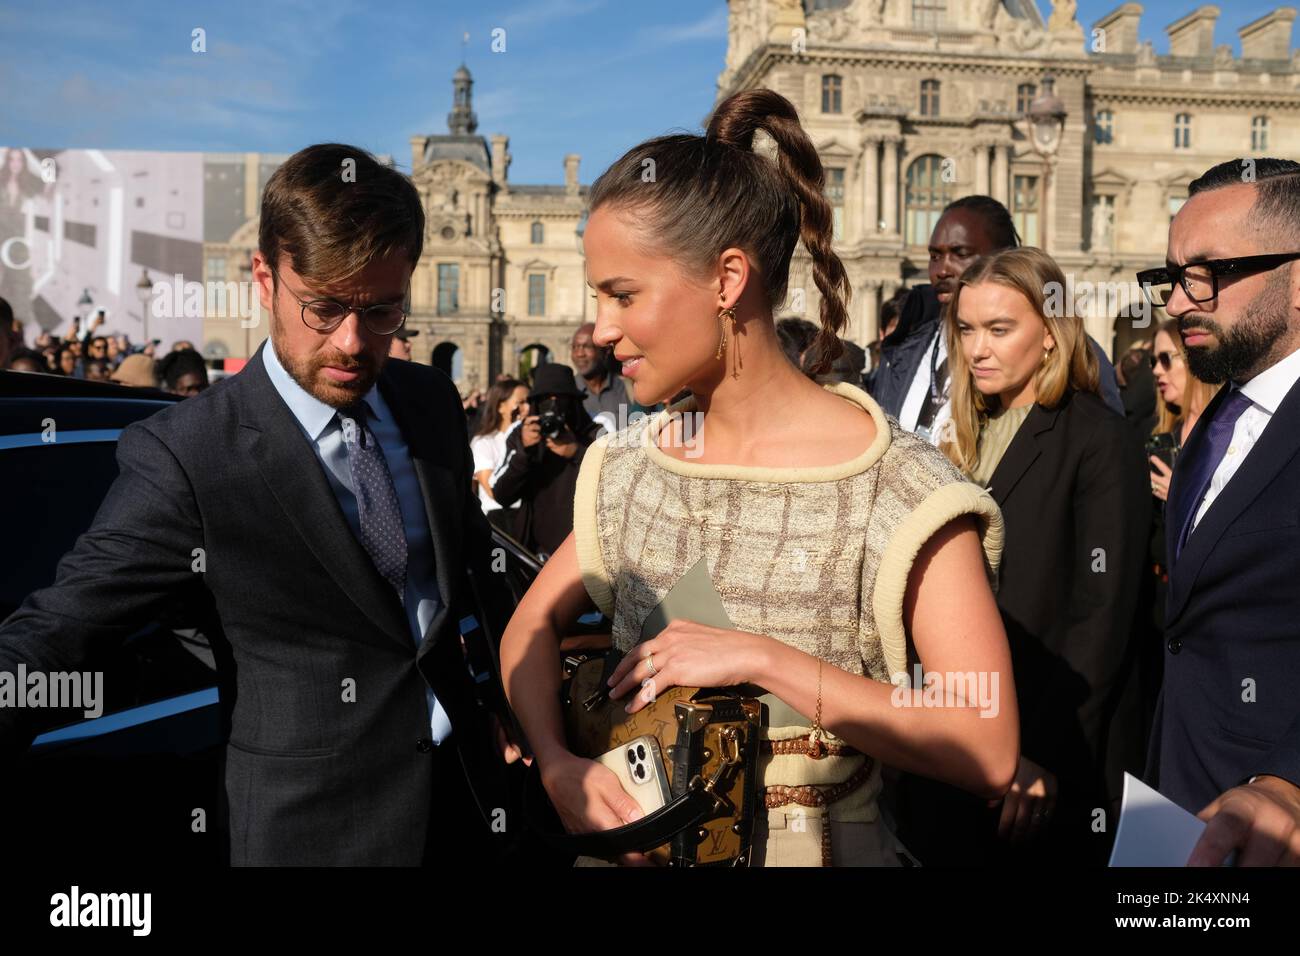 De nombreuses personnalités,actrices, Mannequins, influencuses se sont retrouvées au défilé Louis Vuitton dans le palais du Louvre à Paris Stockfoto